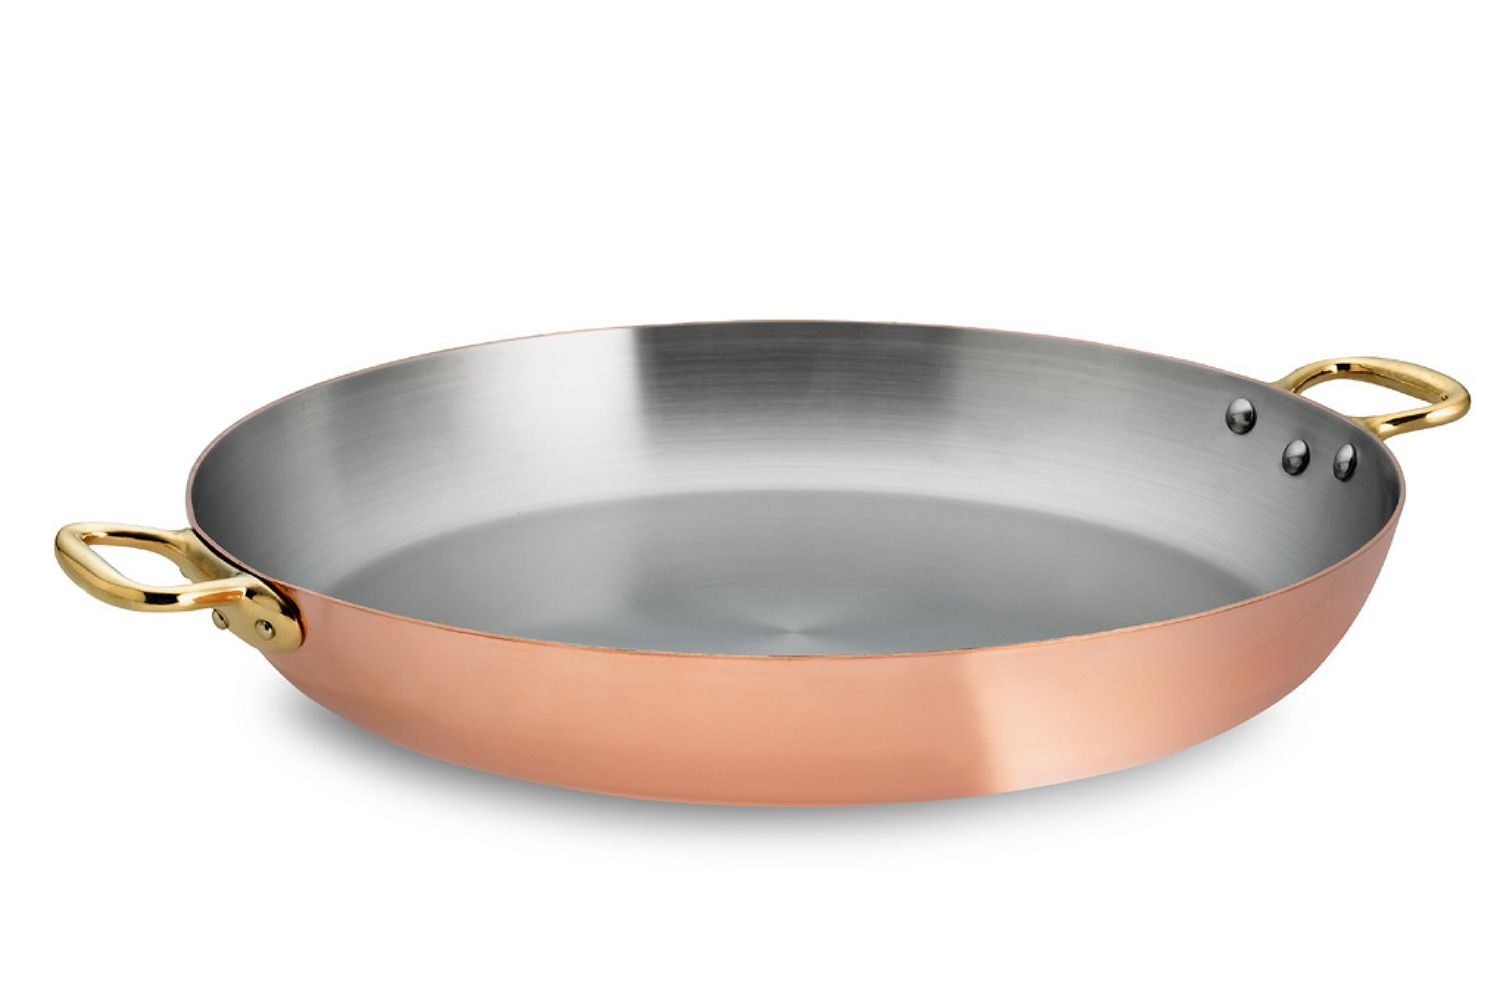  Mauviel Copper Paella Pan